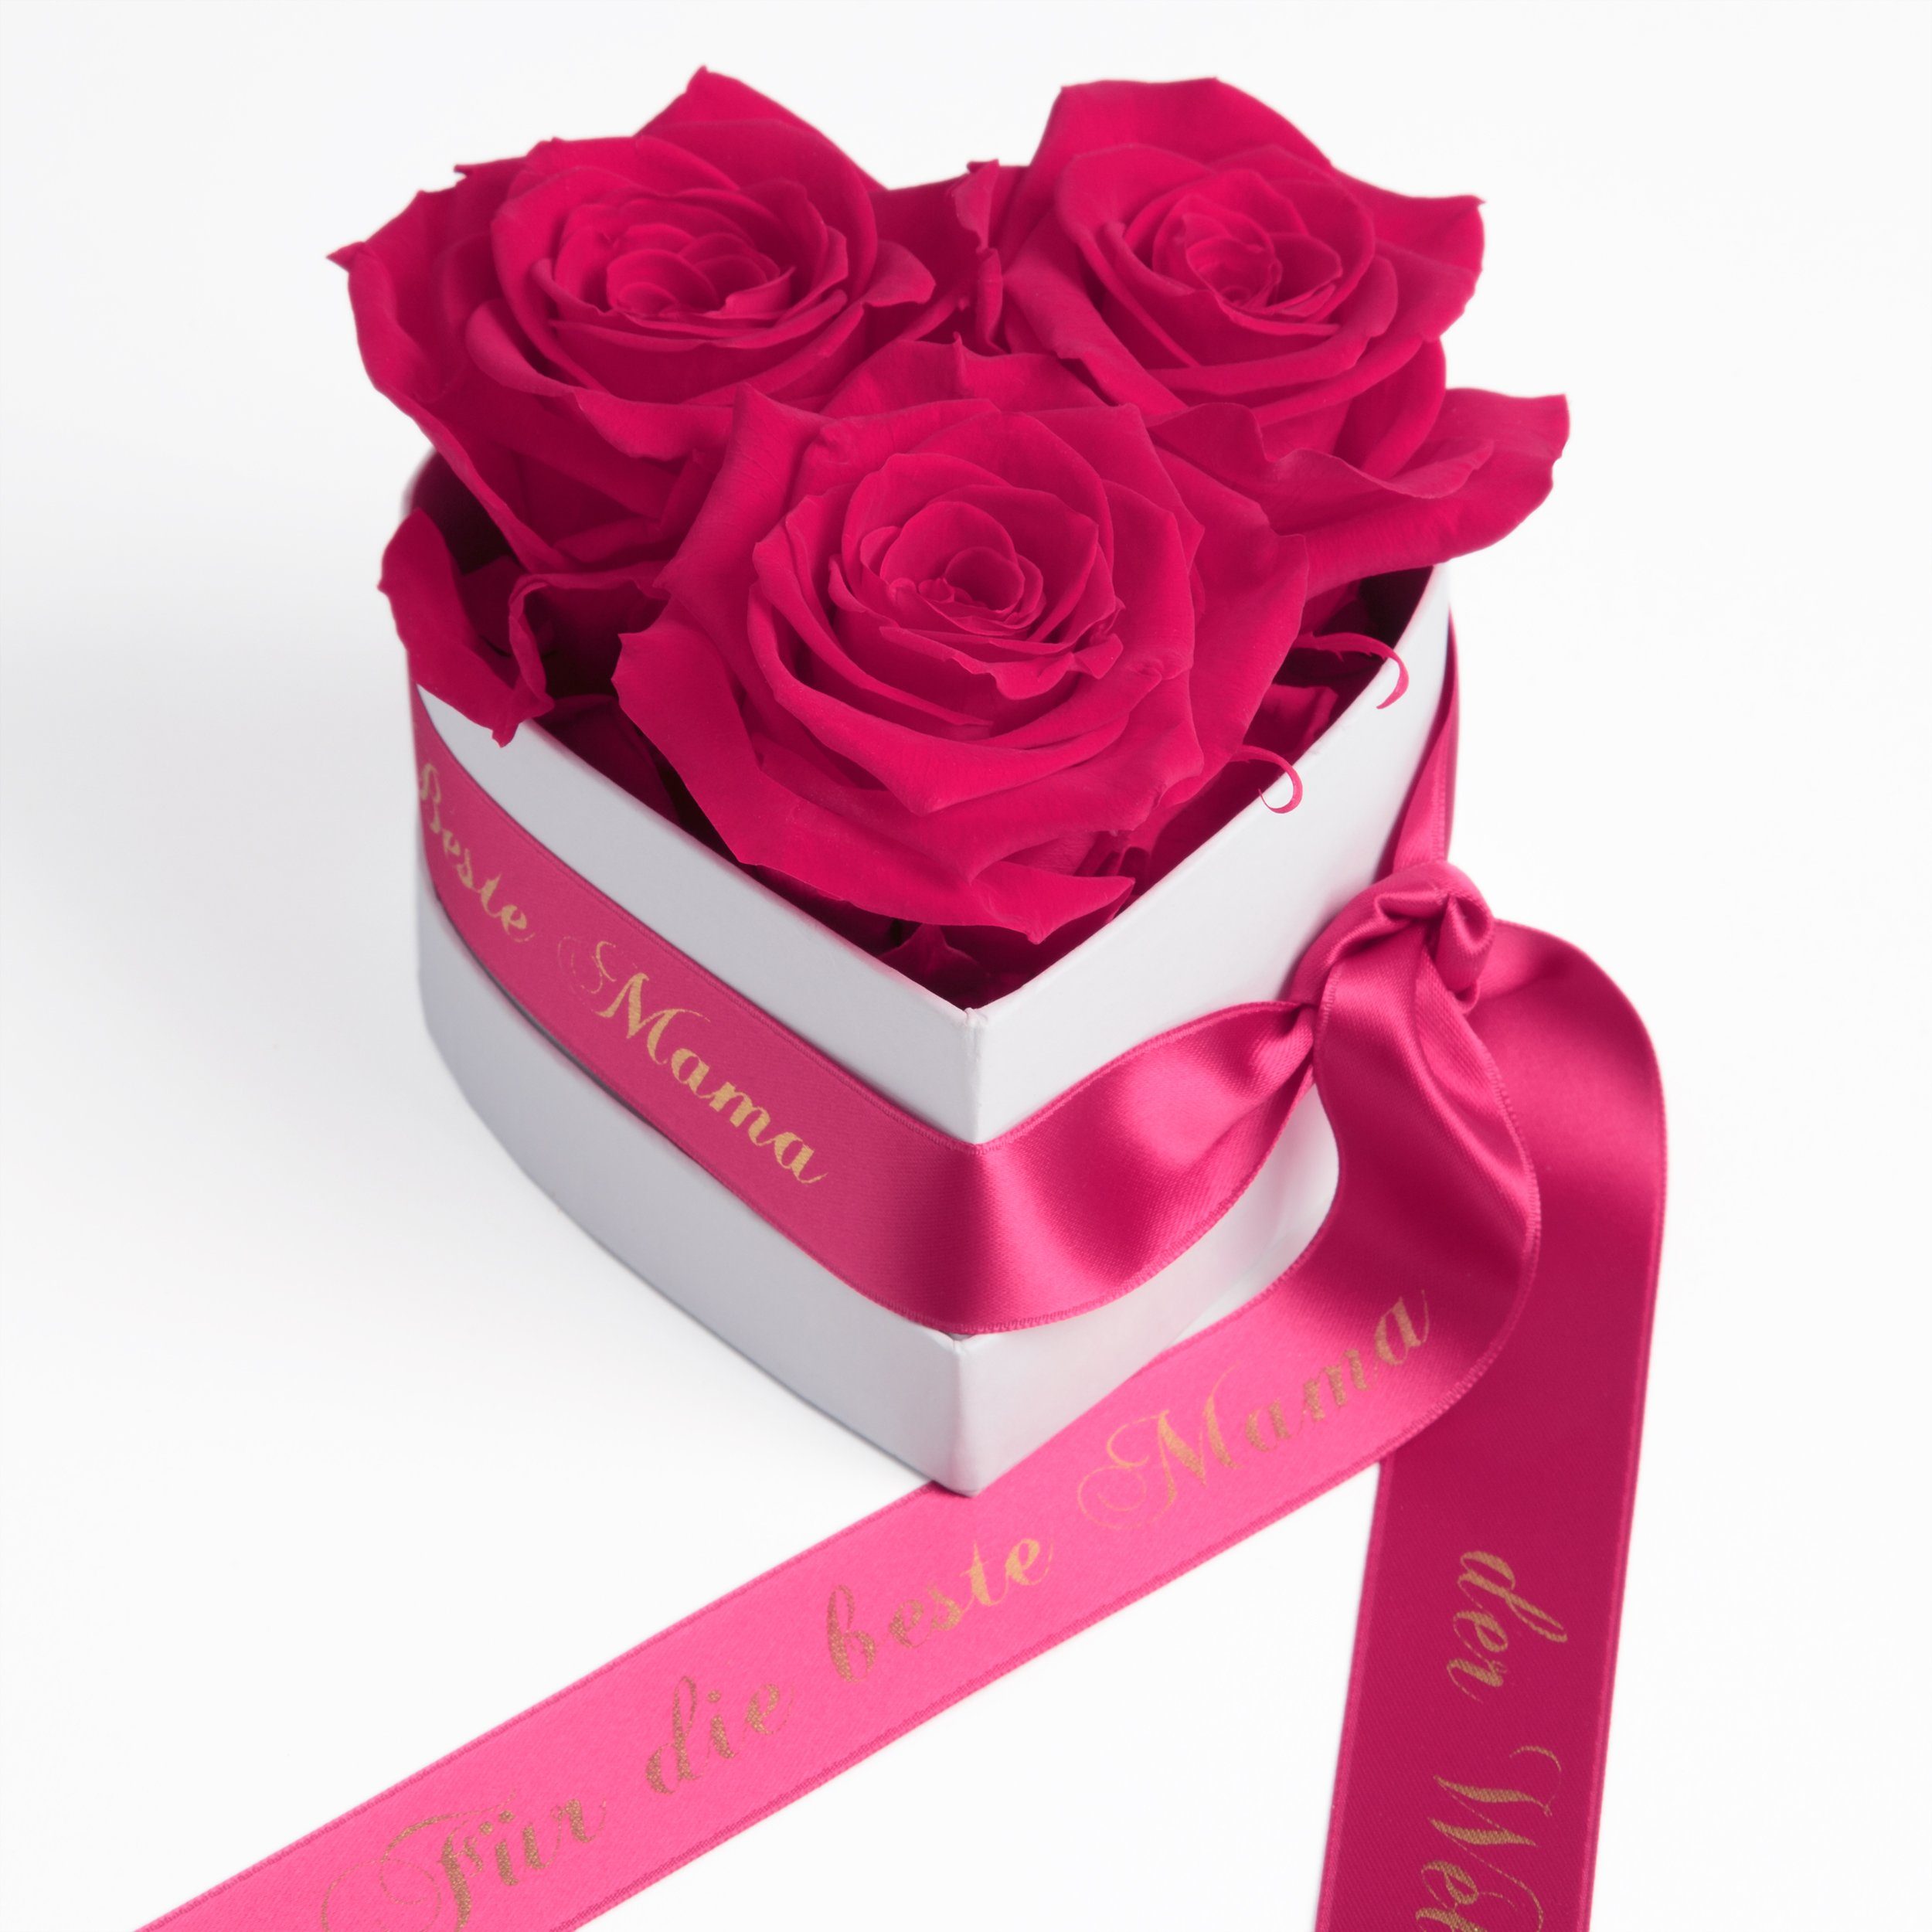 Kunstblume Rosenbox Herz 3 Infinity Rosen für die Beste Mama der Welt Geschenk Rose, ROSEMARIE SCHULZ Heidelberg, Höhe 10 cm, echte Blumen haltbar 3 Jahre Pink